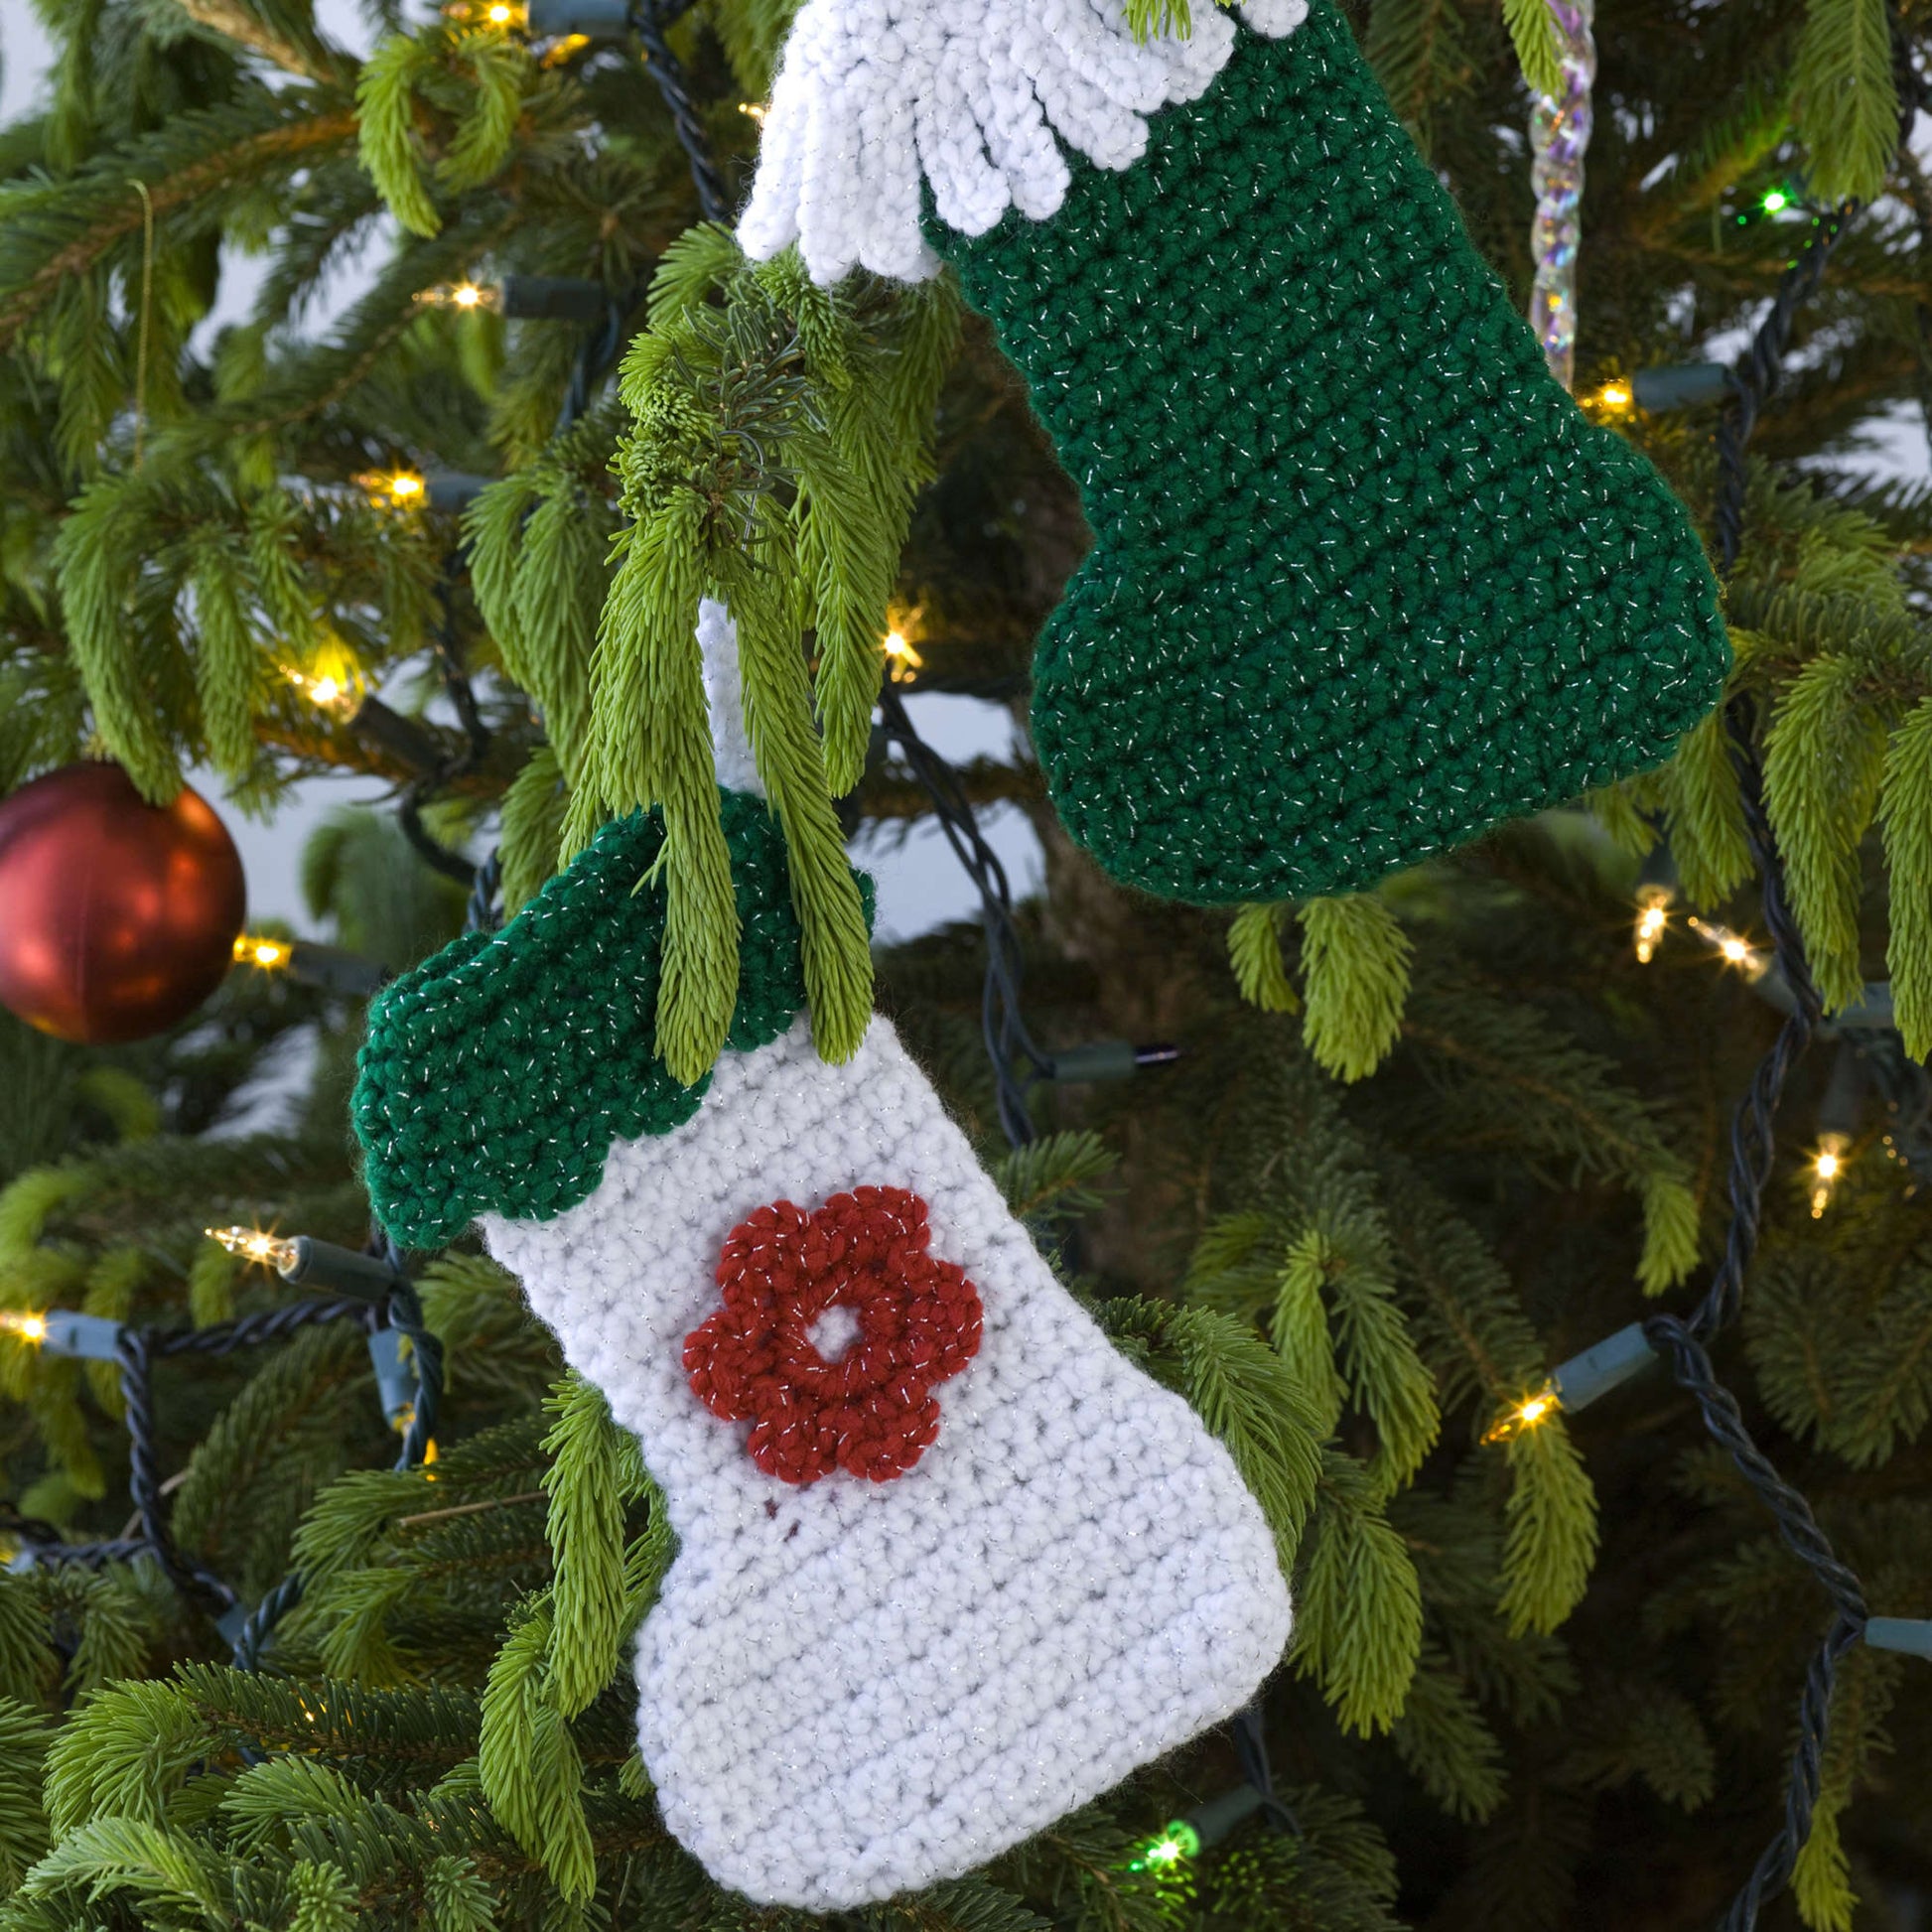 Free Red Crochet Heart Little Stockings Ornaments Pattern